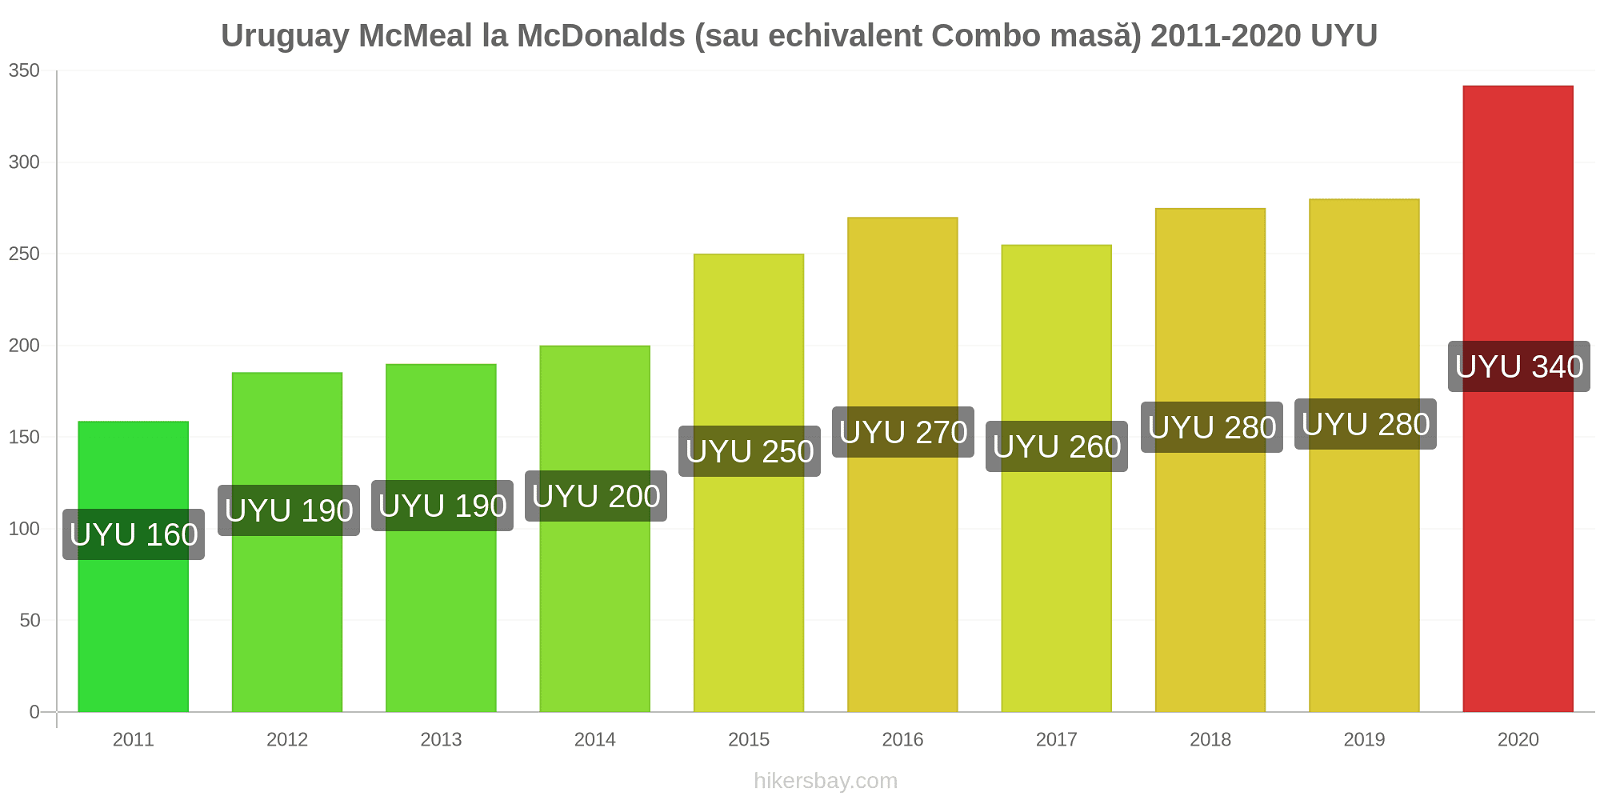 Uruguay modificări de preț McMeal la McDonalds (sau echivalent Combo masă) hikersbay.com